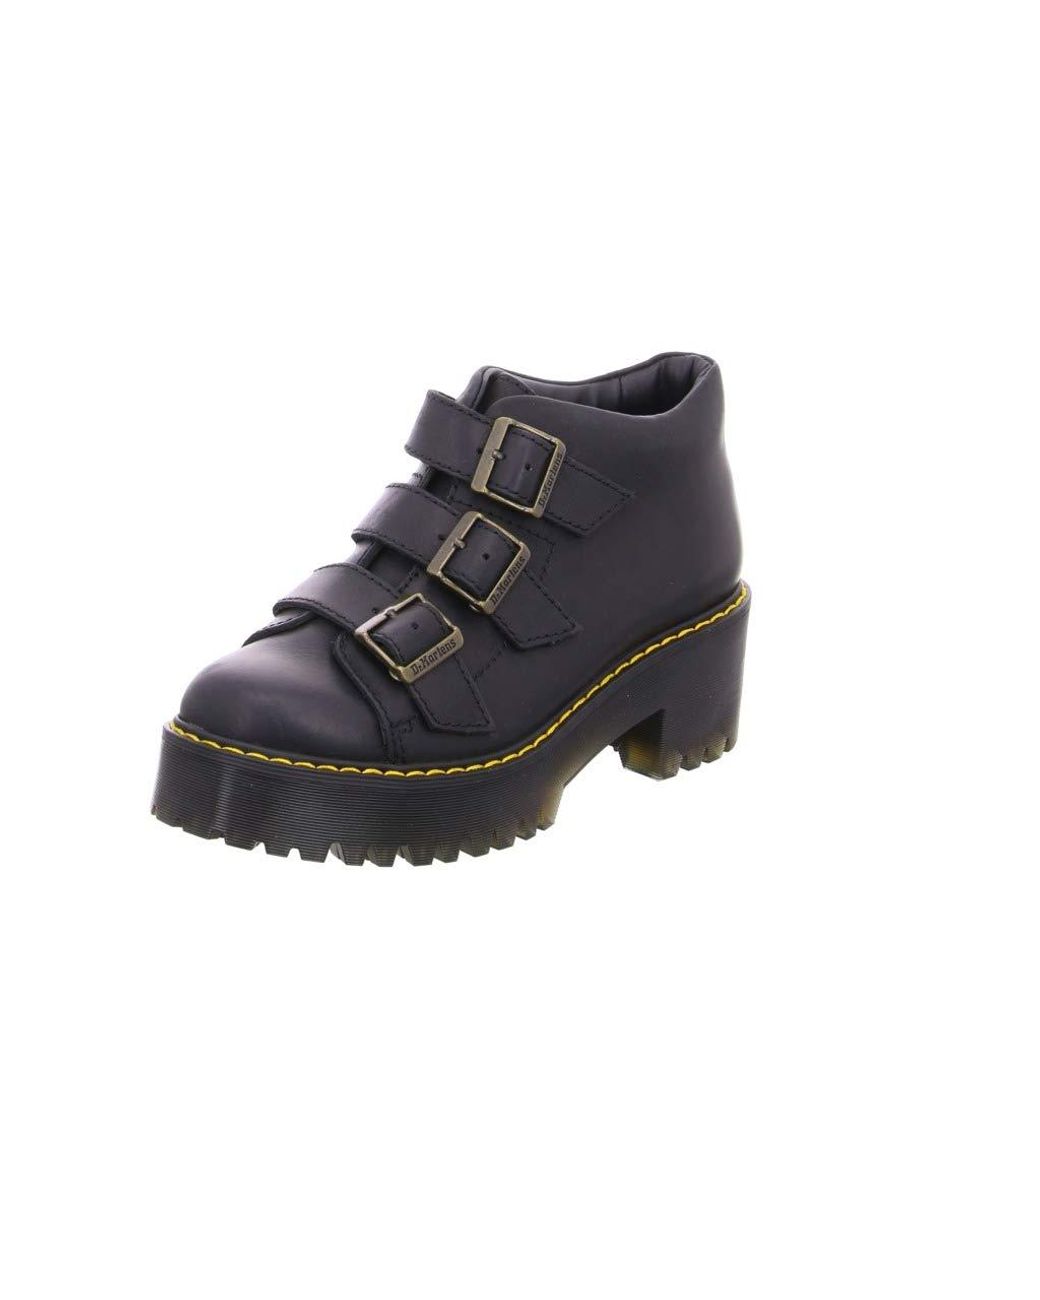 Dr. Martens Coppola Leather Buckle Heeled Boots in Burgundy Vintage (Black)  - Save 61% | Lyst UK